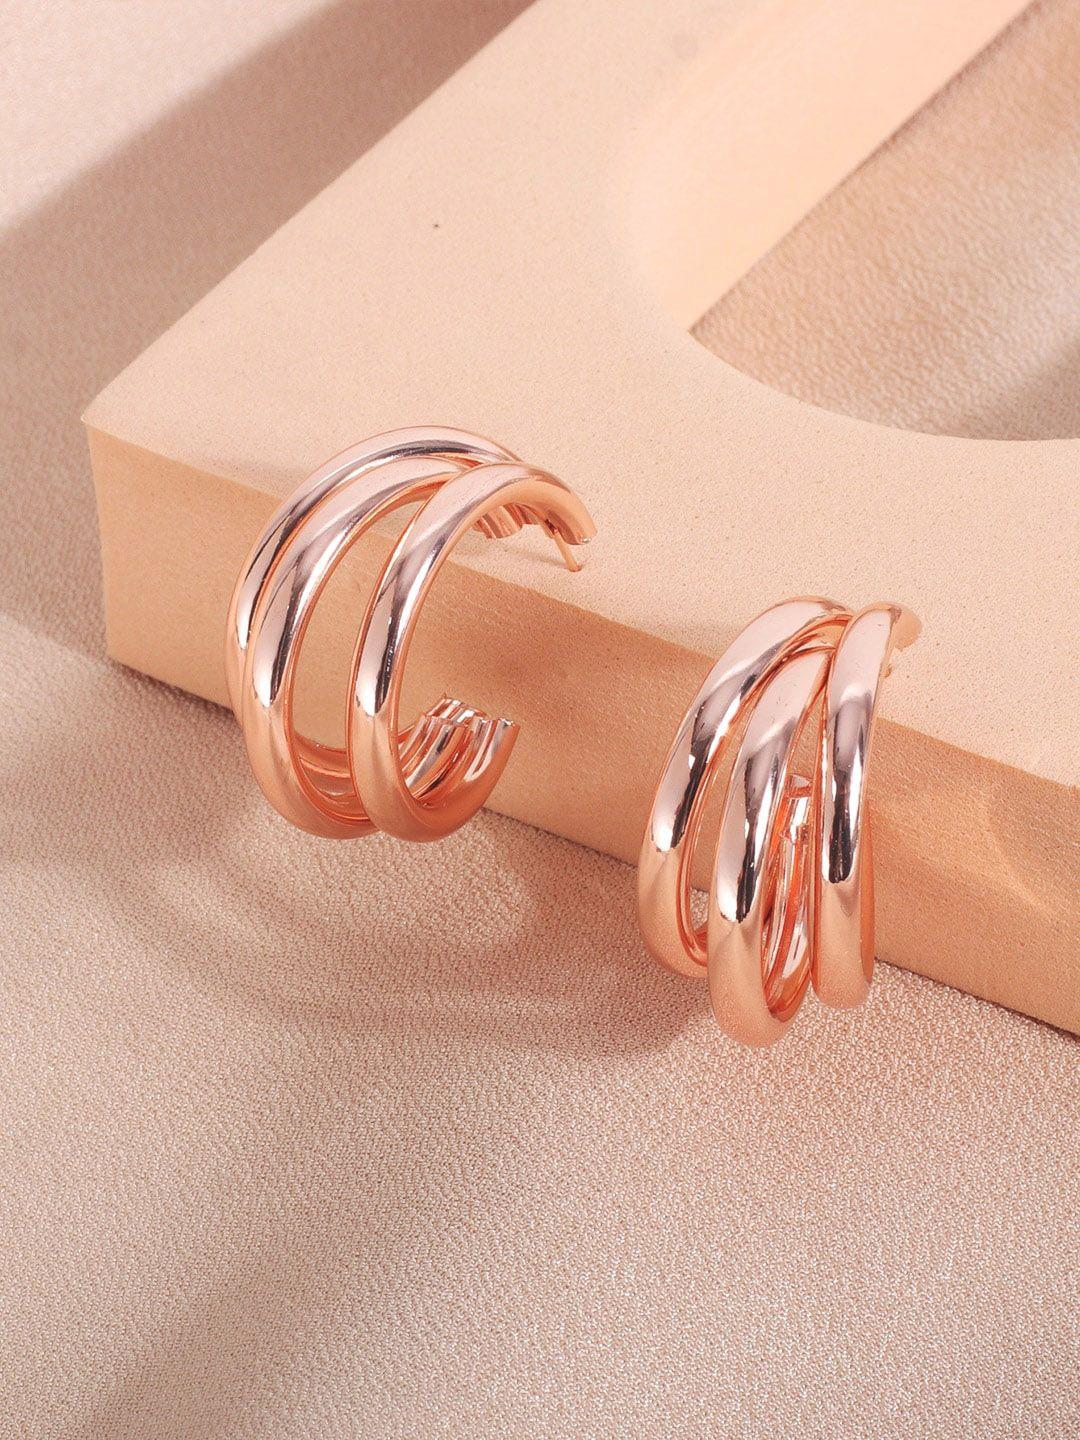 fimbul rose gold-plated circular half hoop earrings